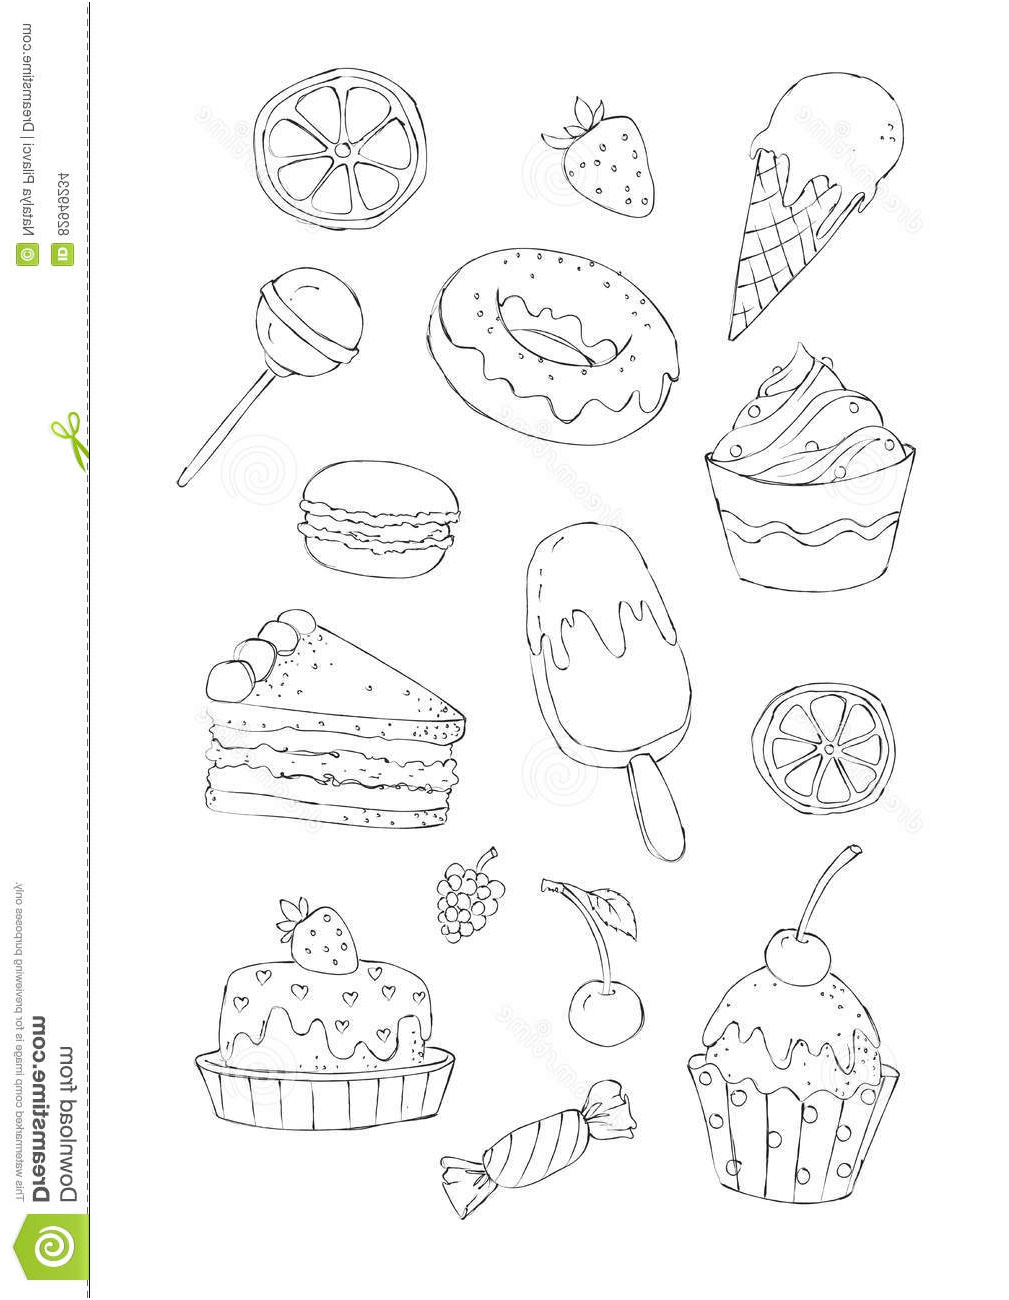 illustration stock illustration de livre de coloriage des desserts et des bonbons image